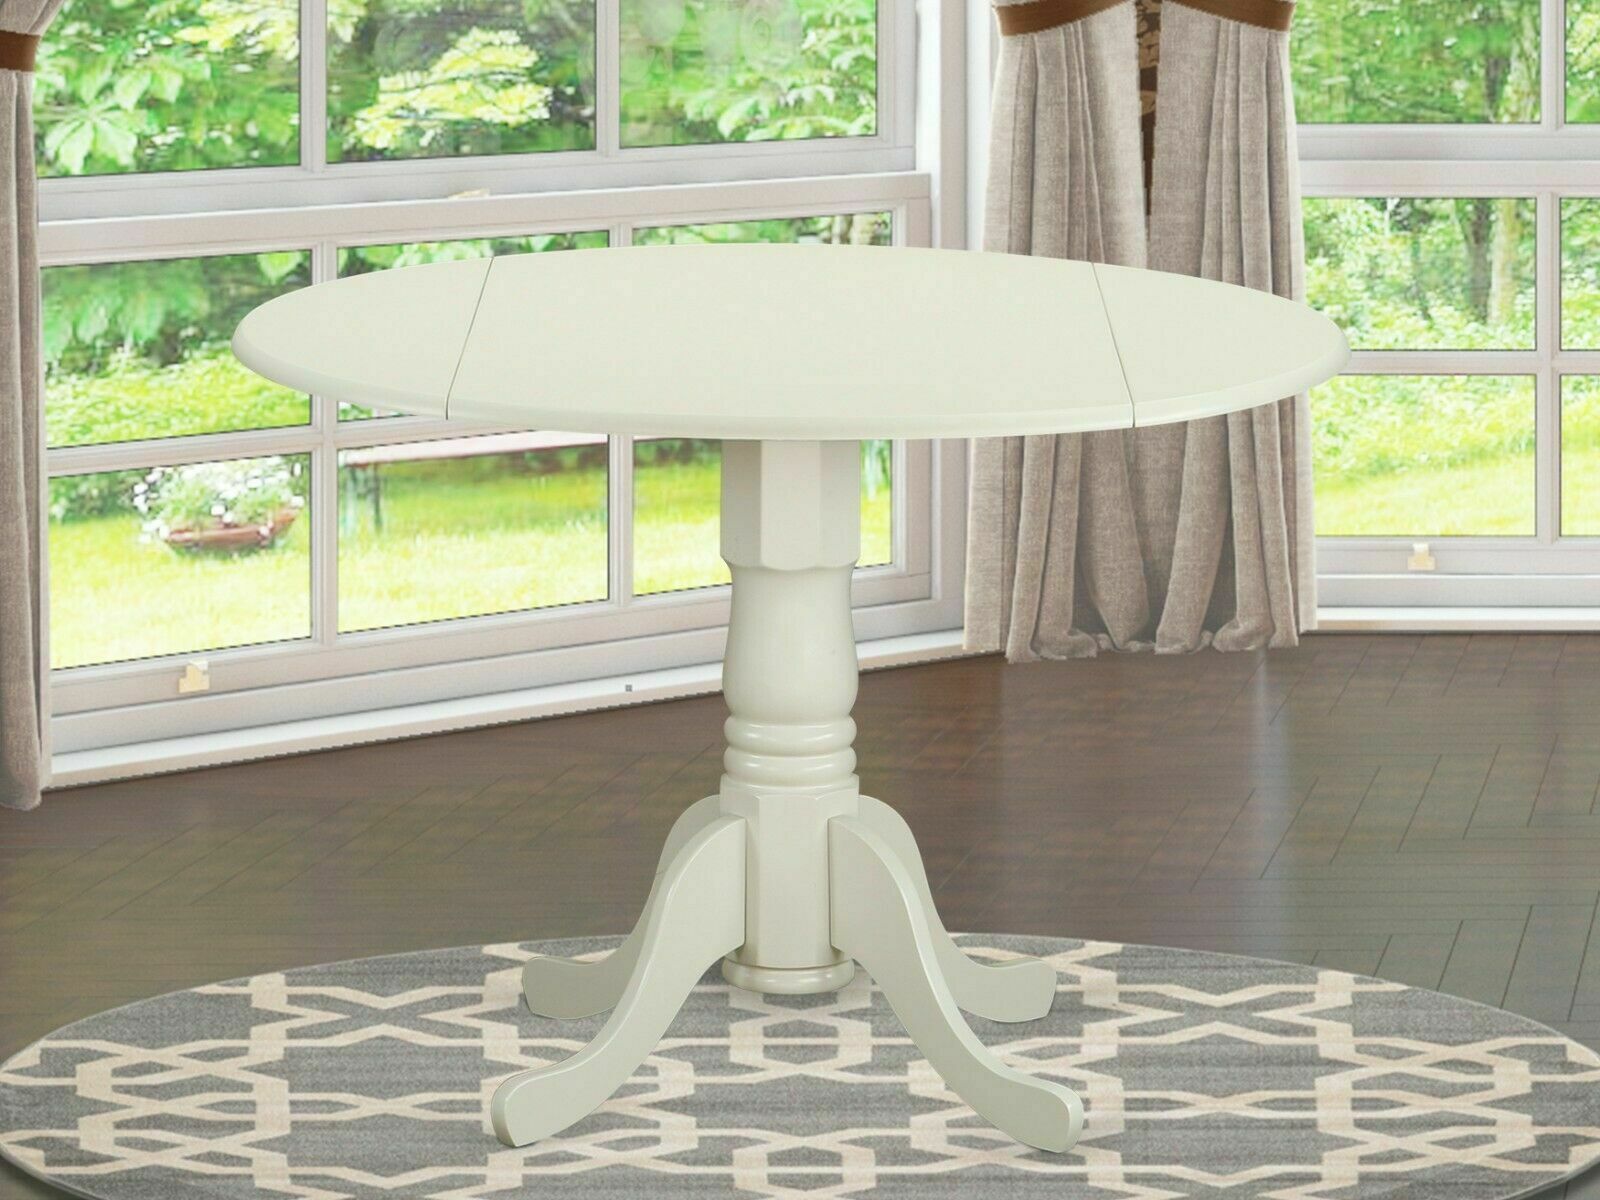 42 round white kitchen table